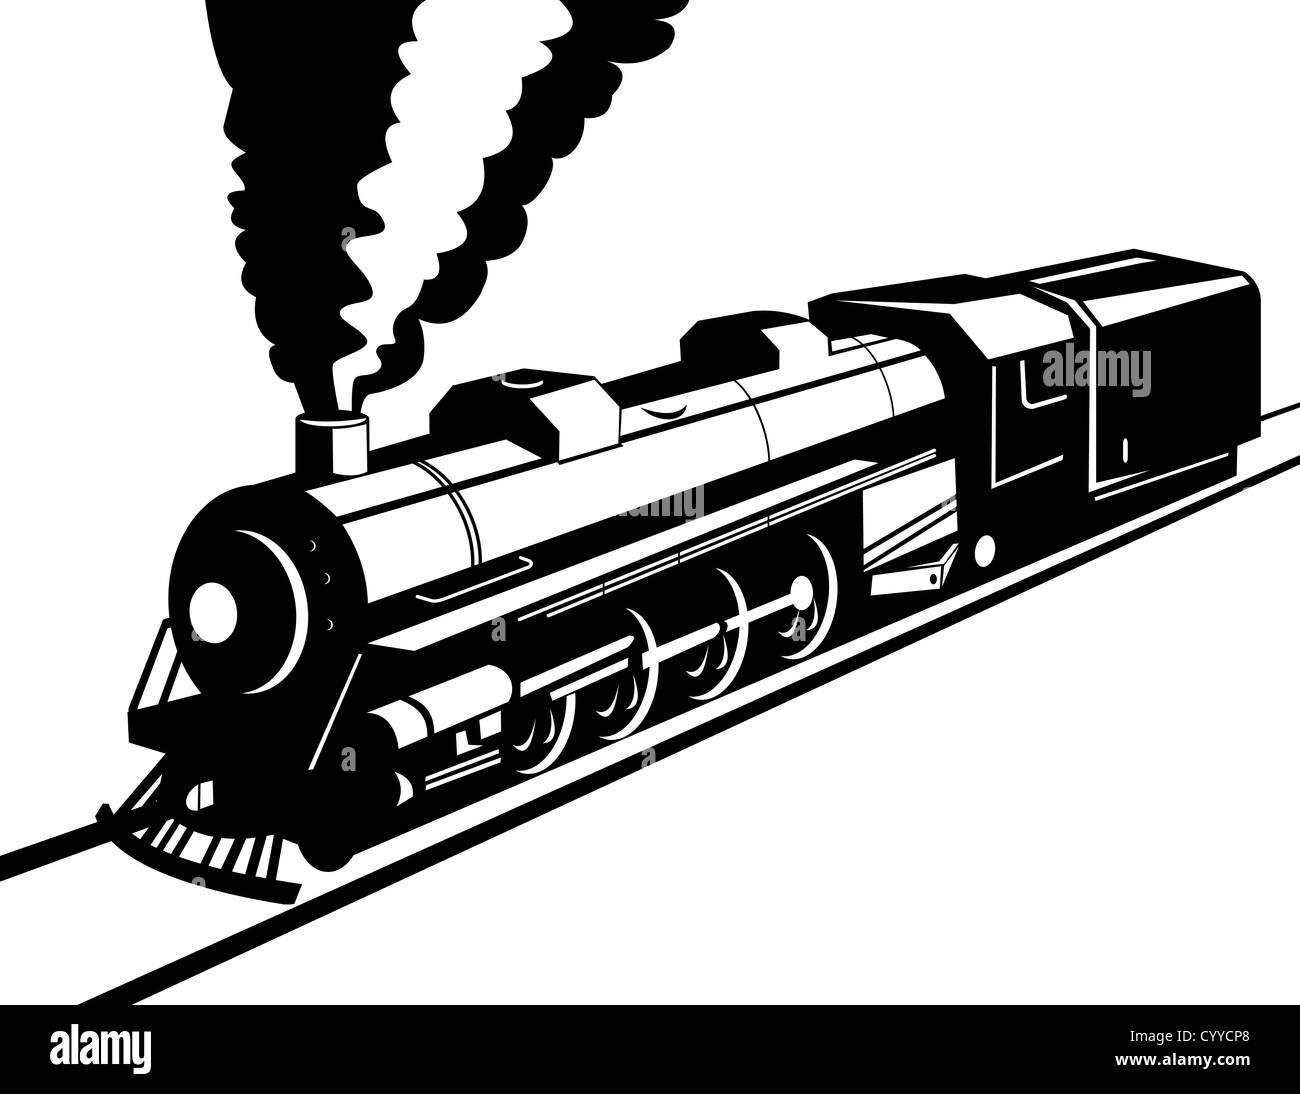 Illustration d'un train à vapeur locomotive de chemin de fer, qui se fait dans le style rétro sur fond isolé Banque D'Images